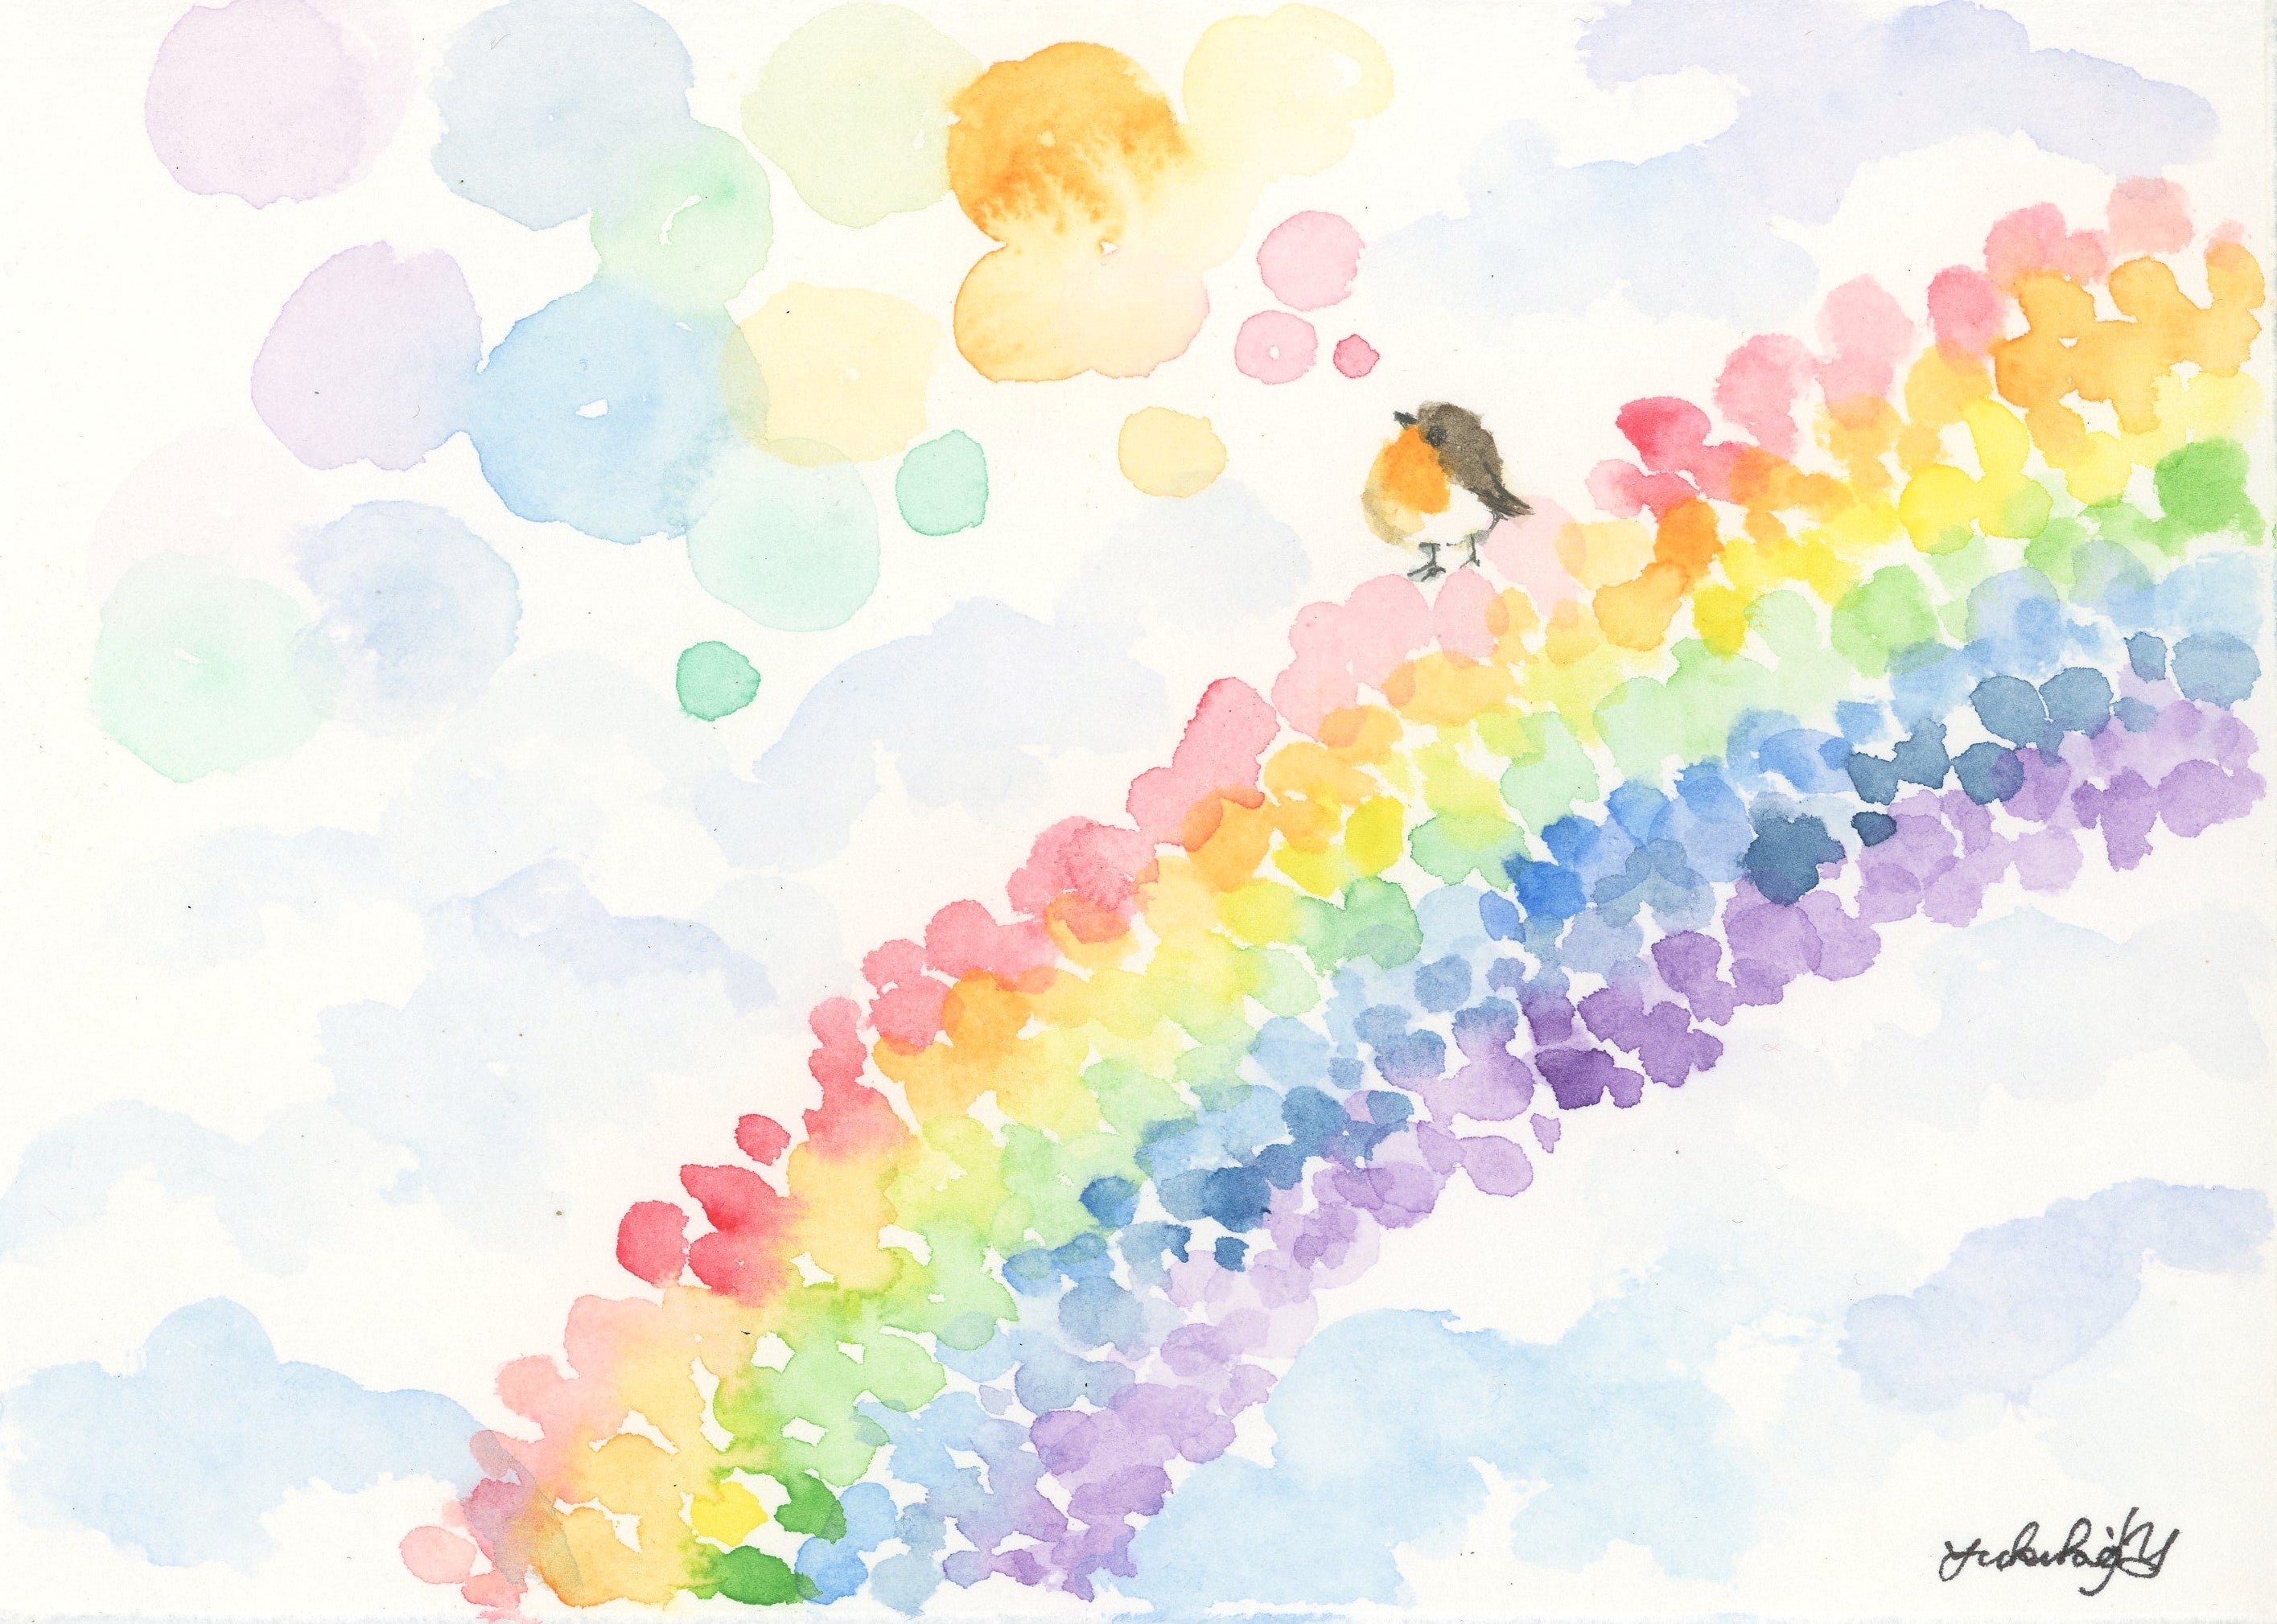 Rainbow of flower